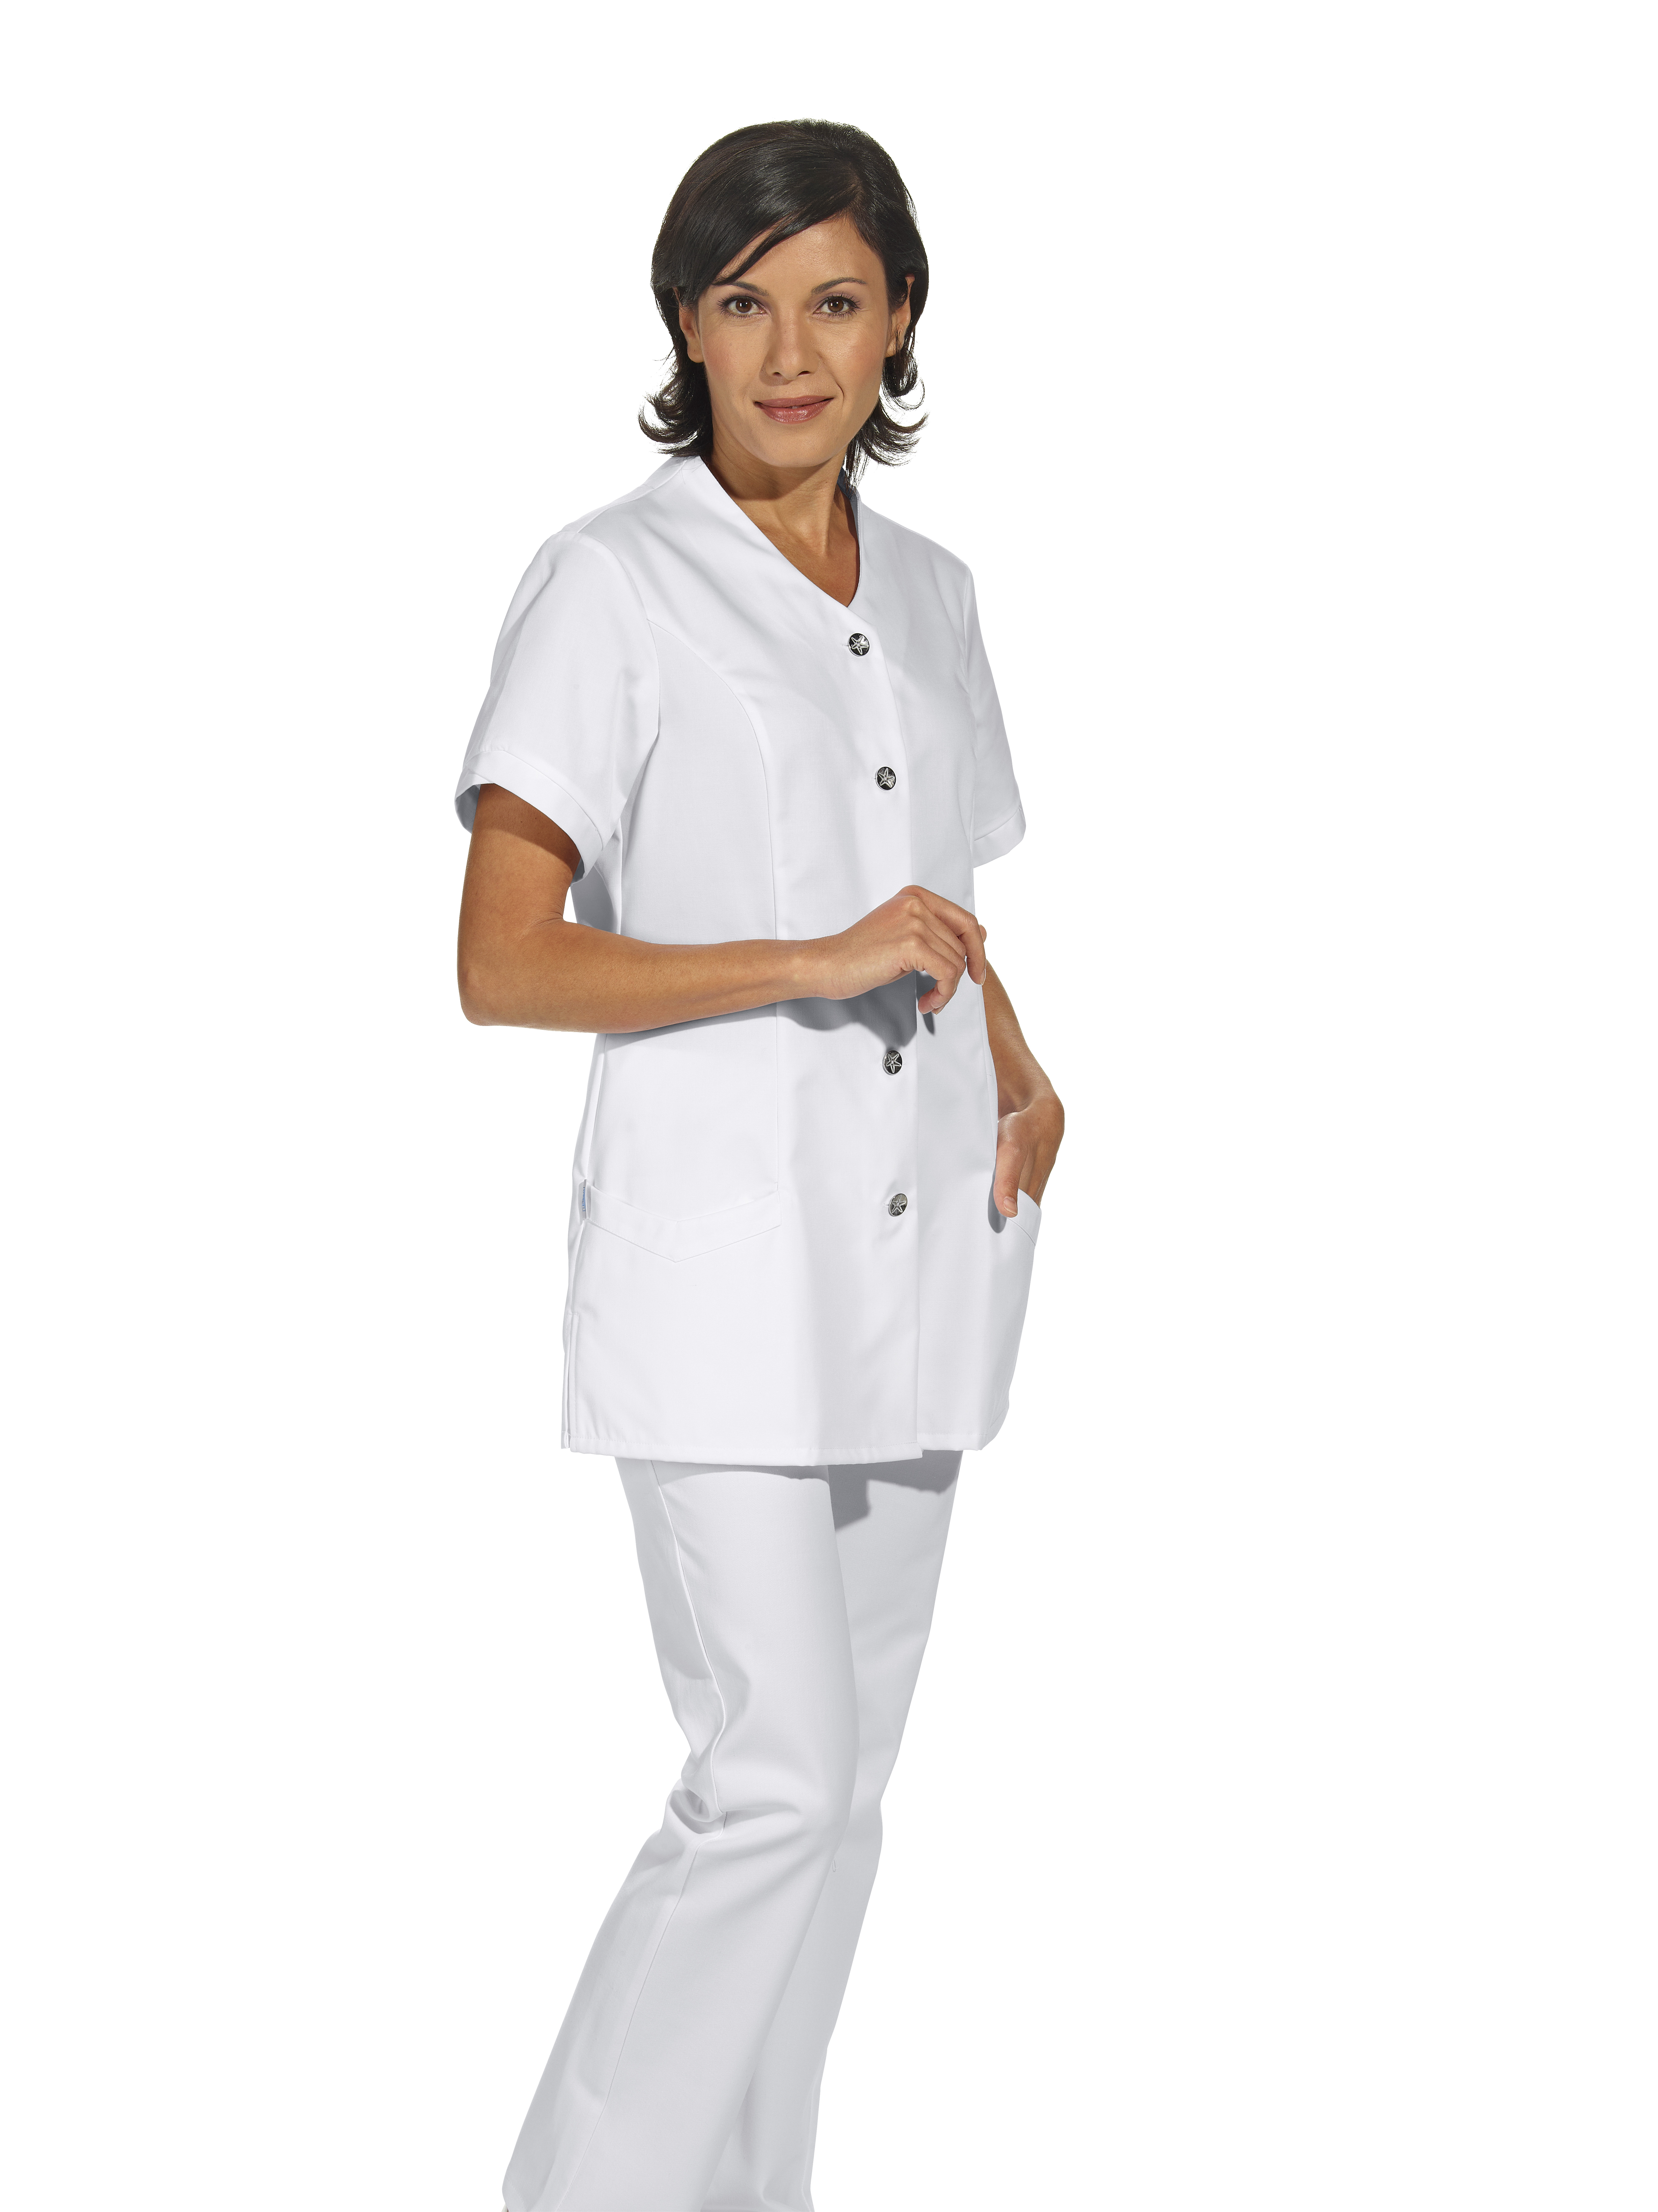 LEIBER Damenkasack Arbeitskasack Berufskasack Schlupfjacke Hosenkasack für Pflege und Medizin 1 2 Arm weiß